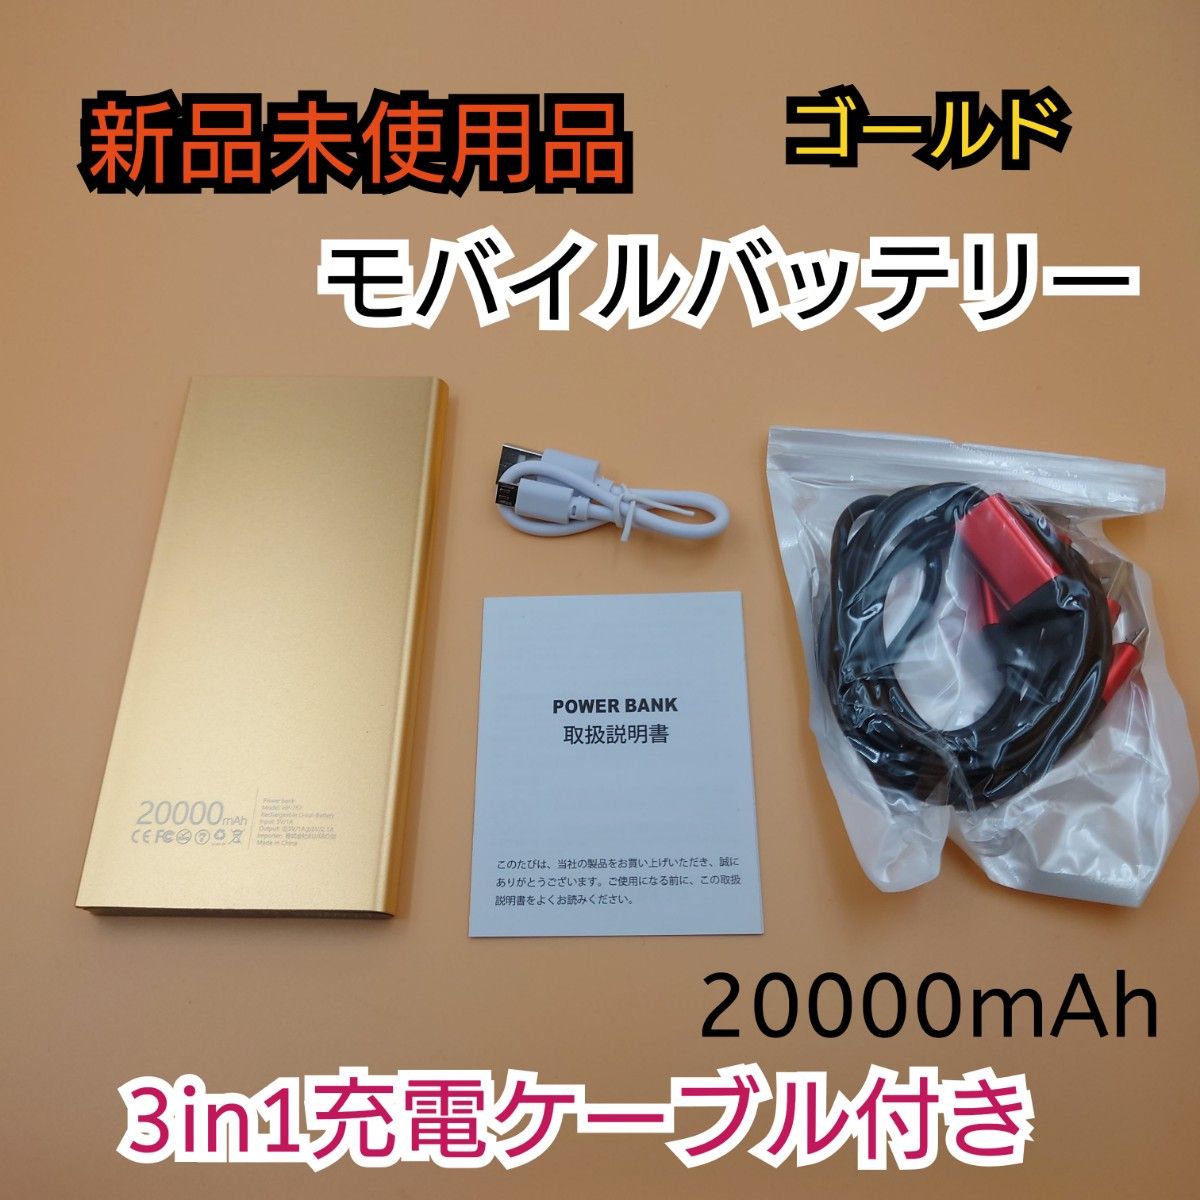 【新品未使用品】モバイルバッテリー 20000mAh ゴールド